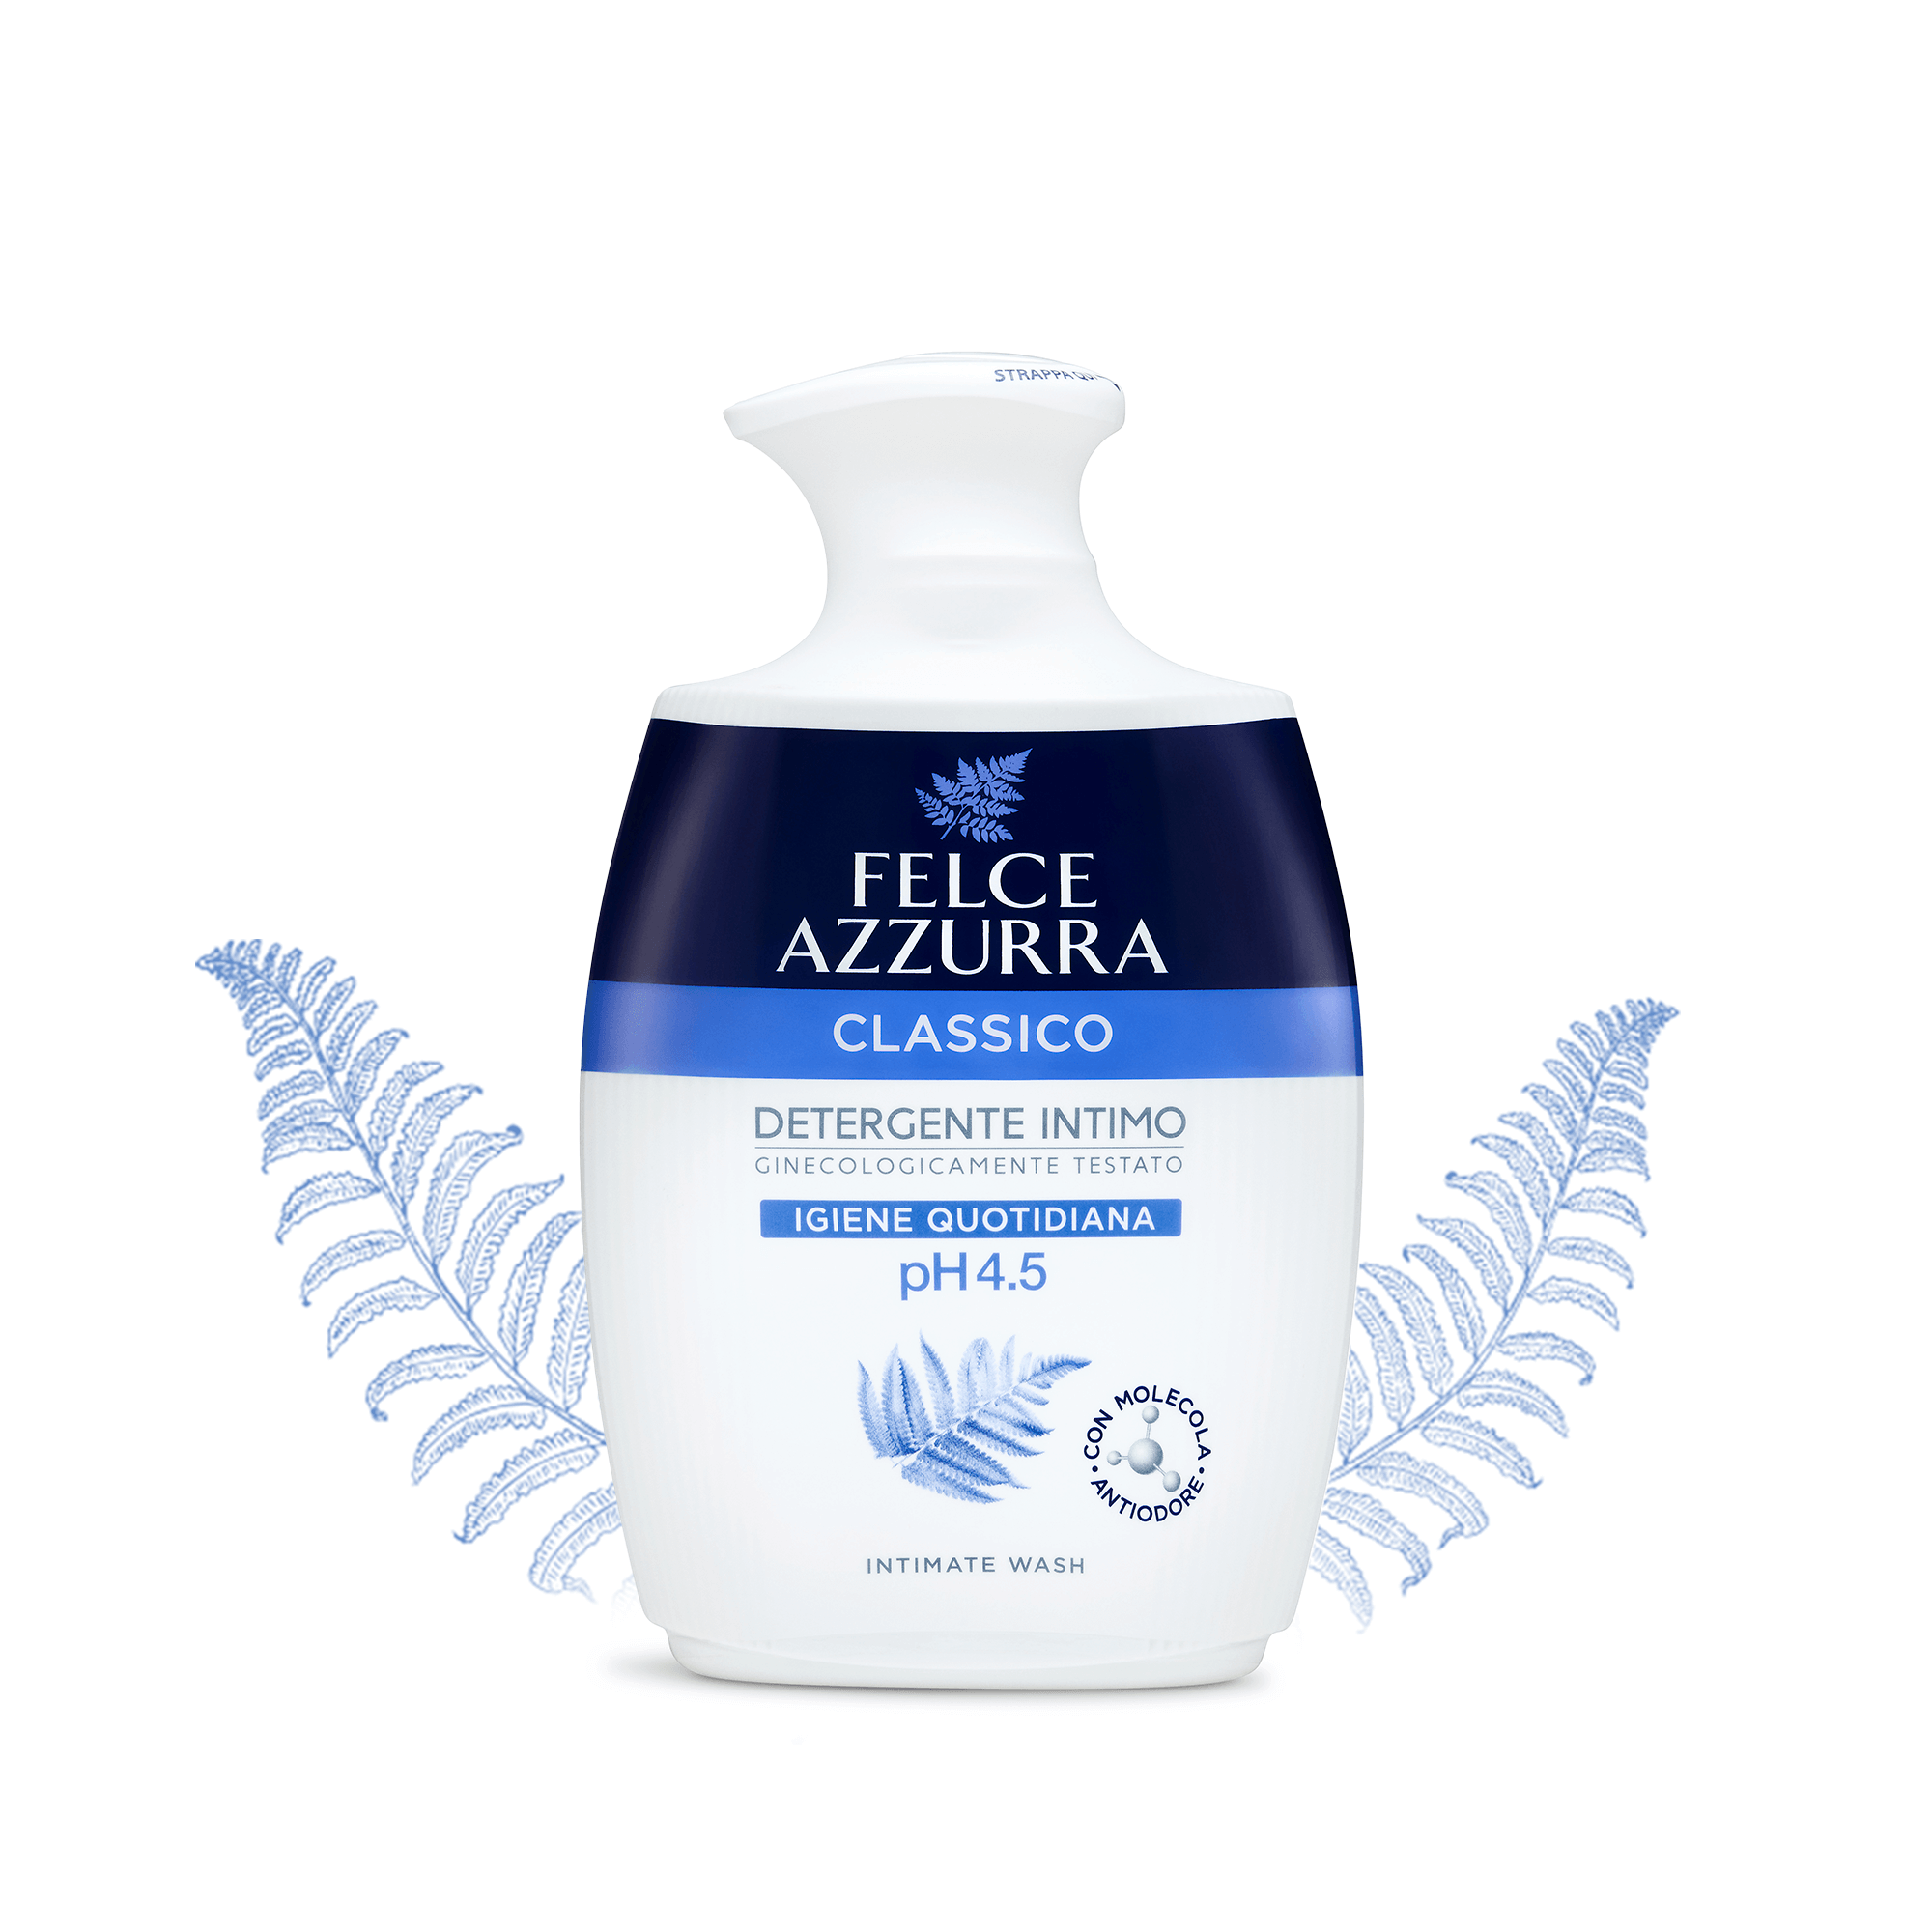 Dung dịch vệ sinh phụ nữ hương nước hoa cổ điển Ý Felce Azzurra 250ml